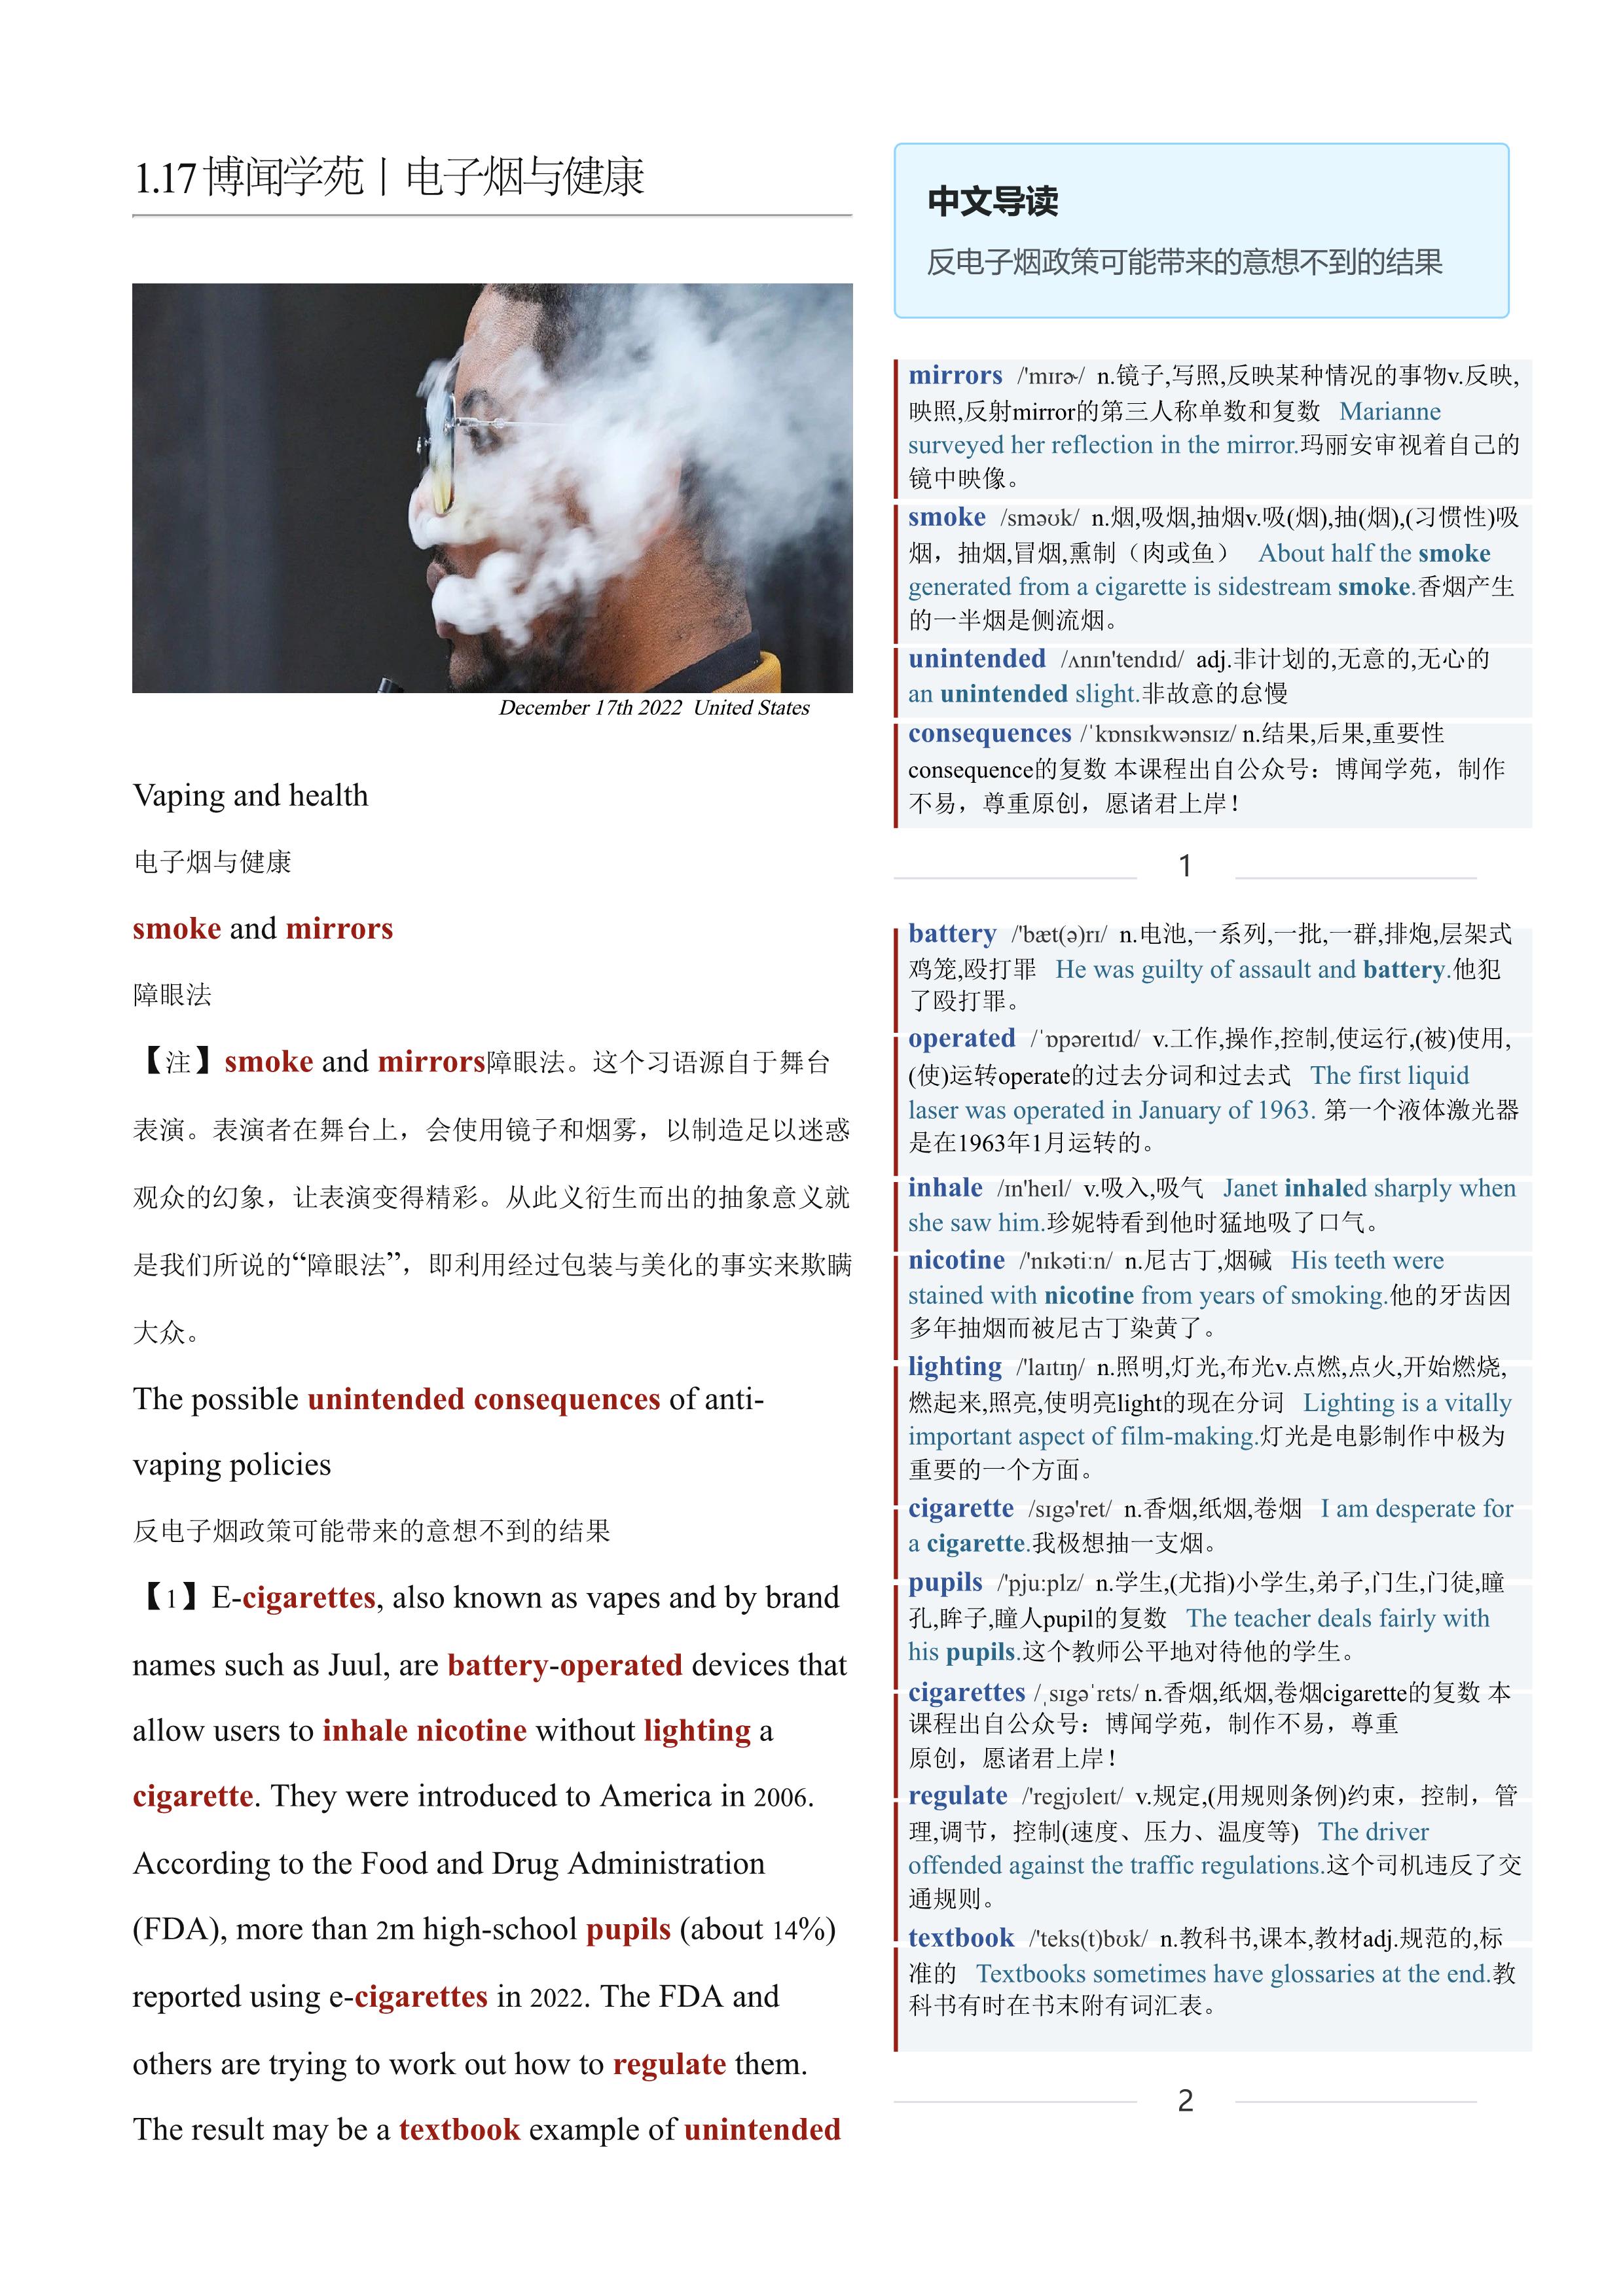 2023.01.17 经济学人双语精读丨电子烟与健康 (.PDF/DOC/MP3)